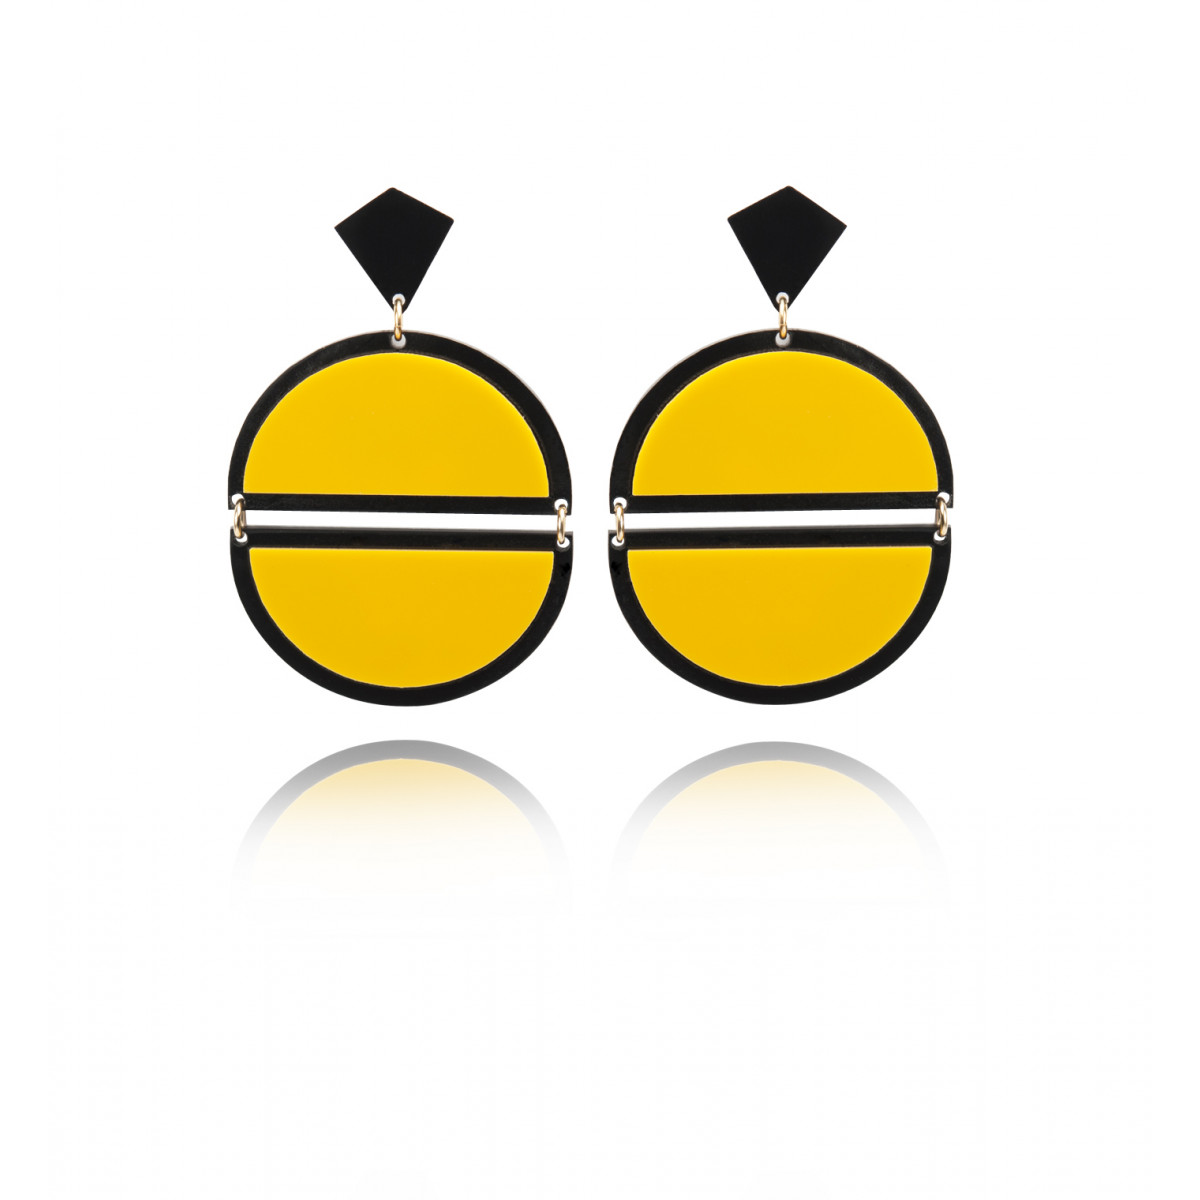 Pearled Cross Earrings, Black, Yellow Gold – Gigi Clozeau - Jewelry